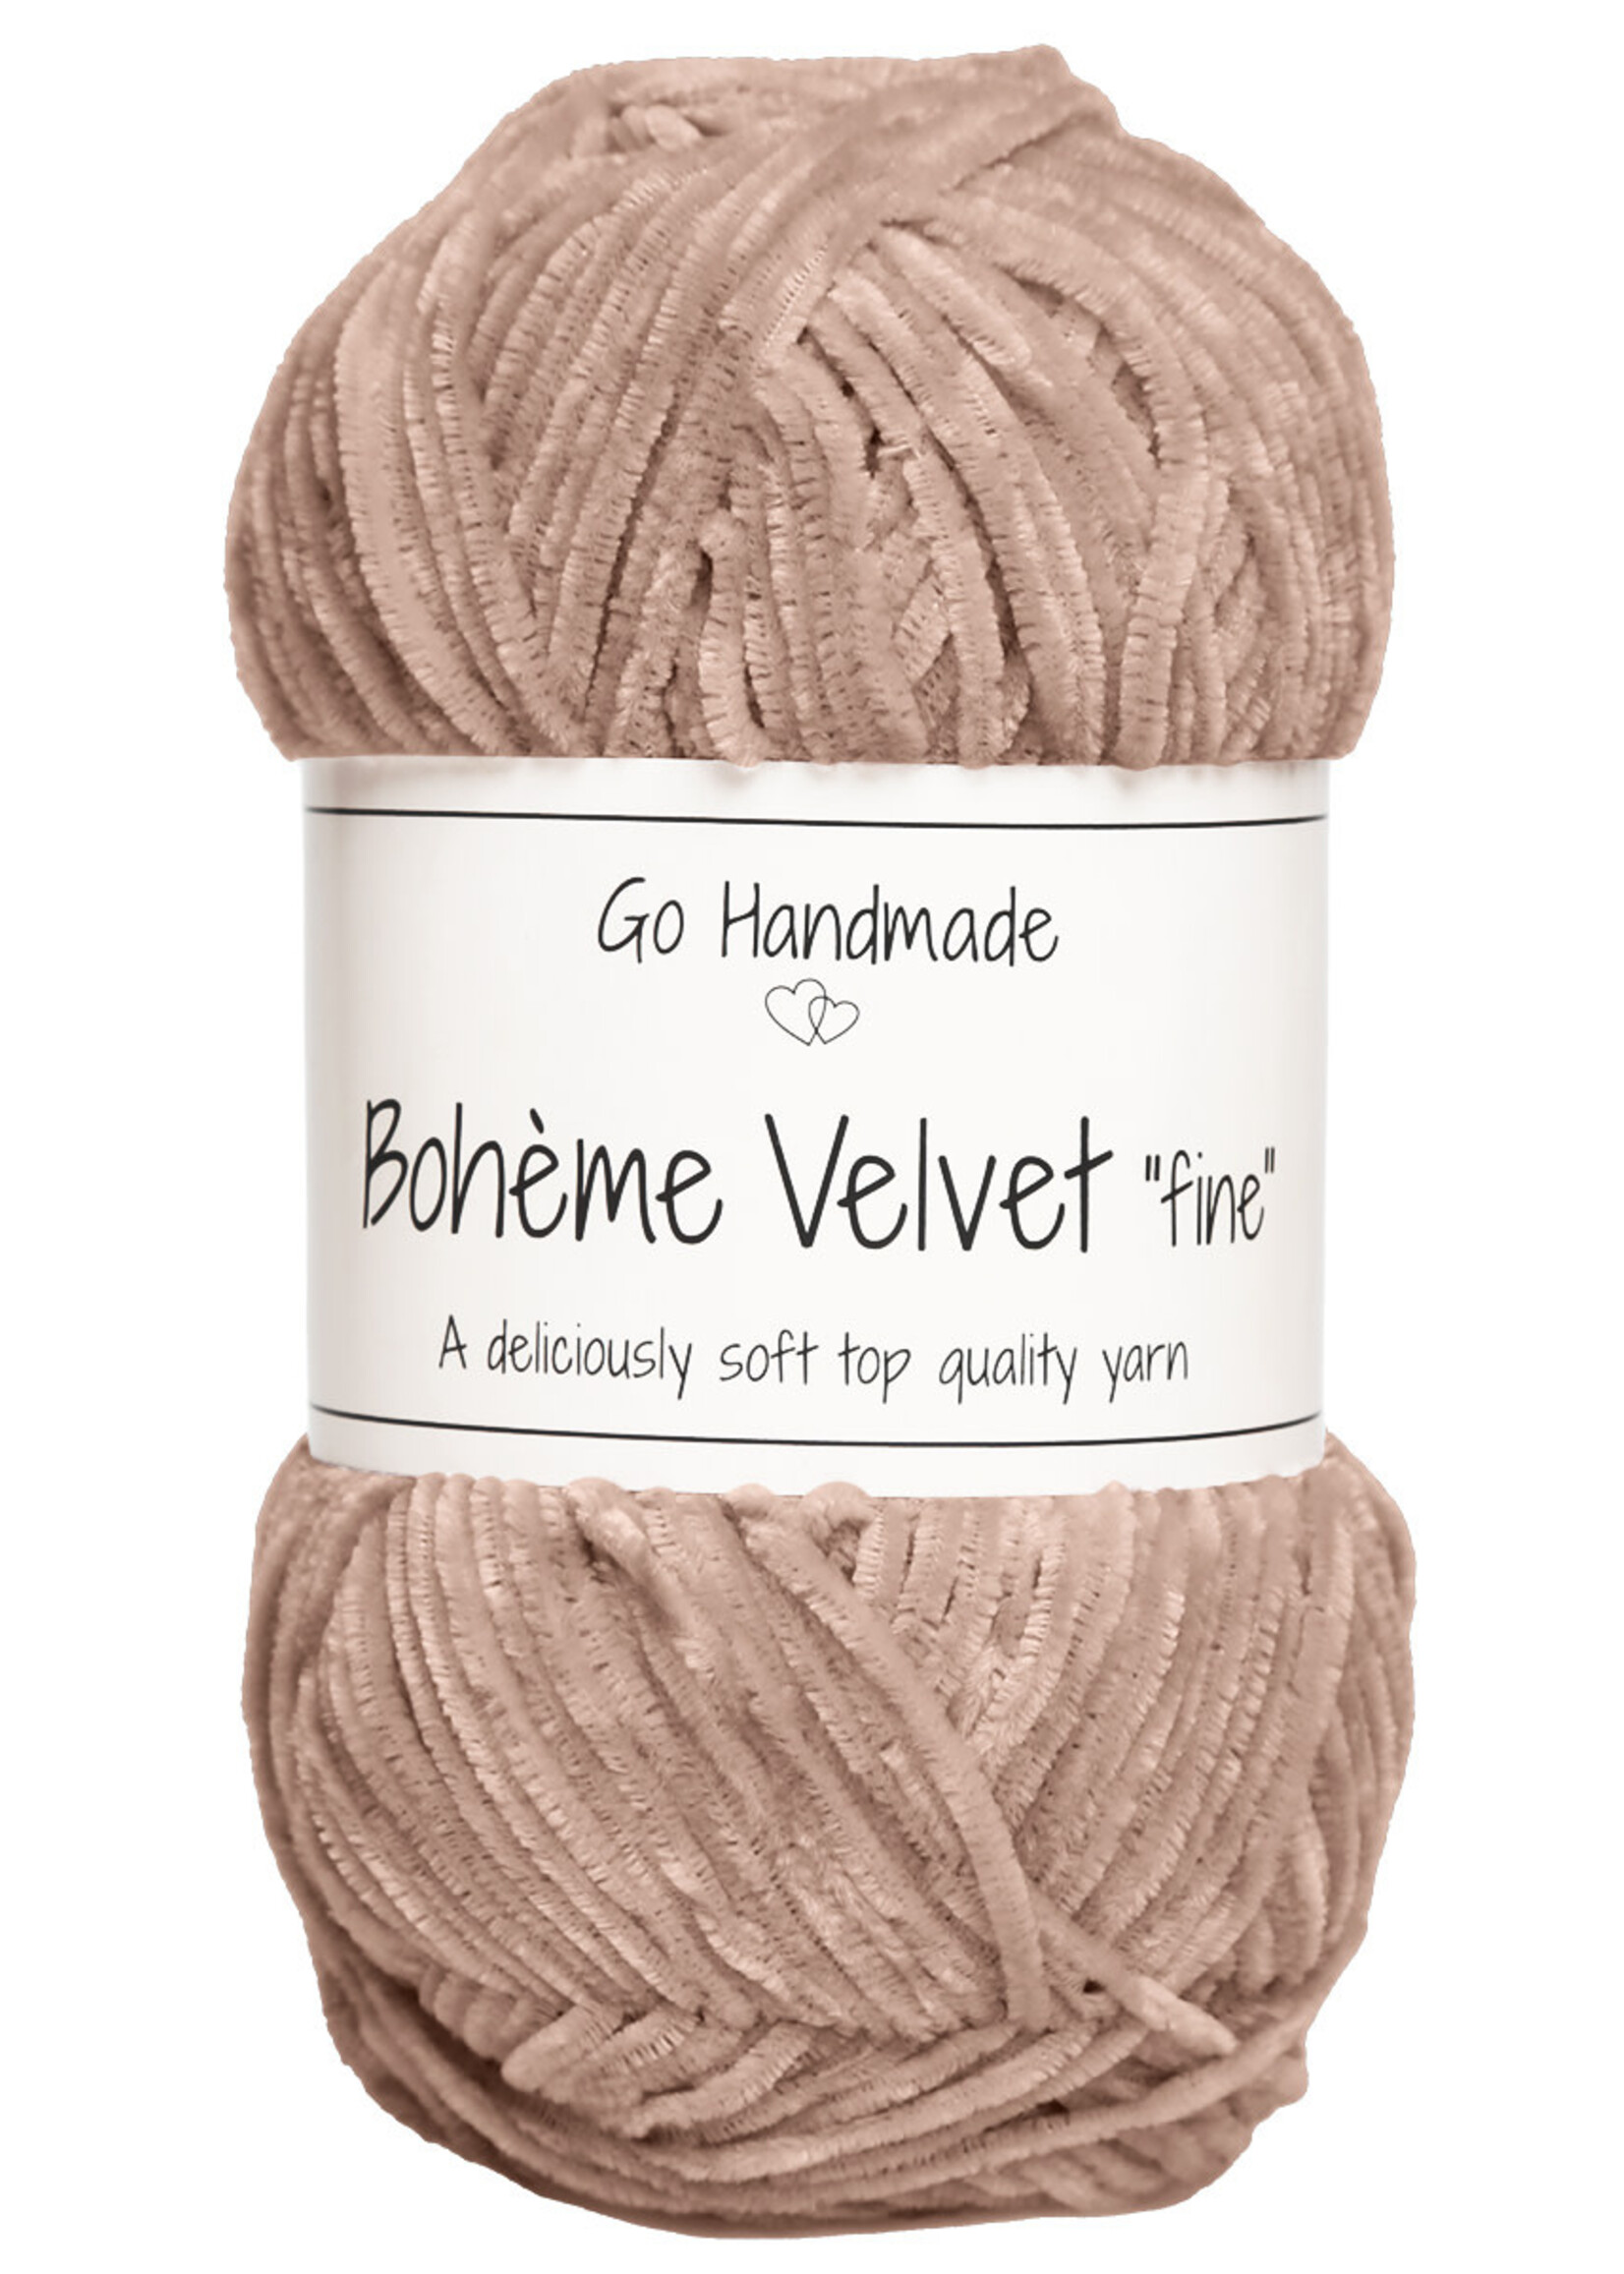 GoHandmade Bohème Velvet "fine" -brown